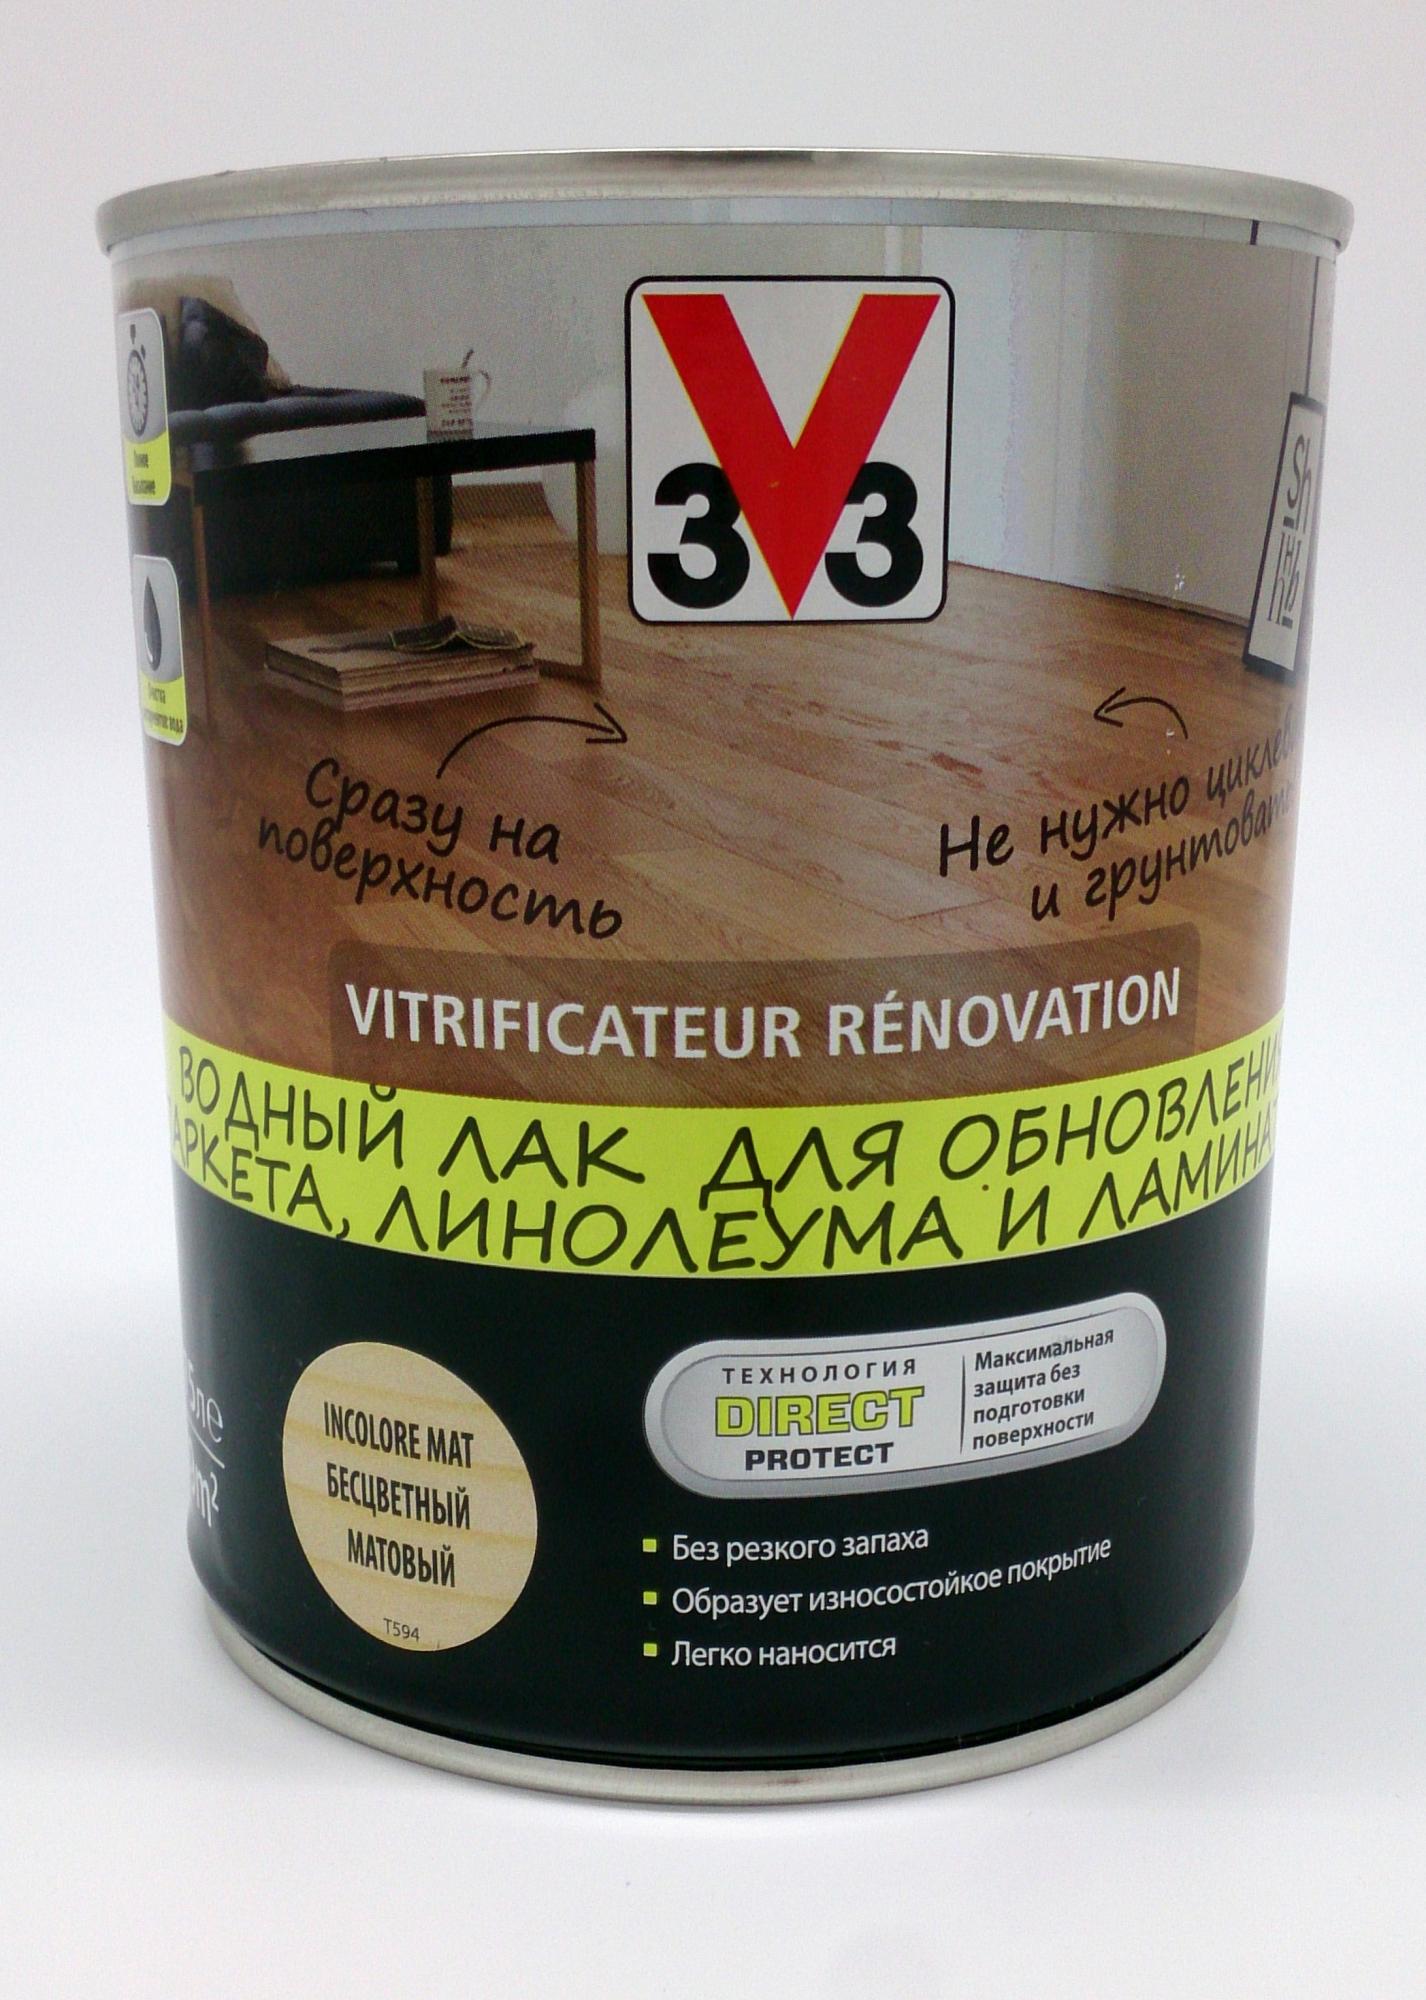 3v3 лак для обновления мебели